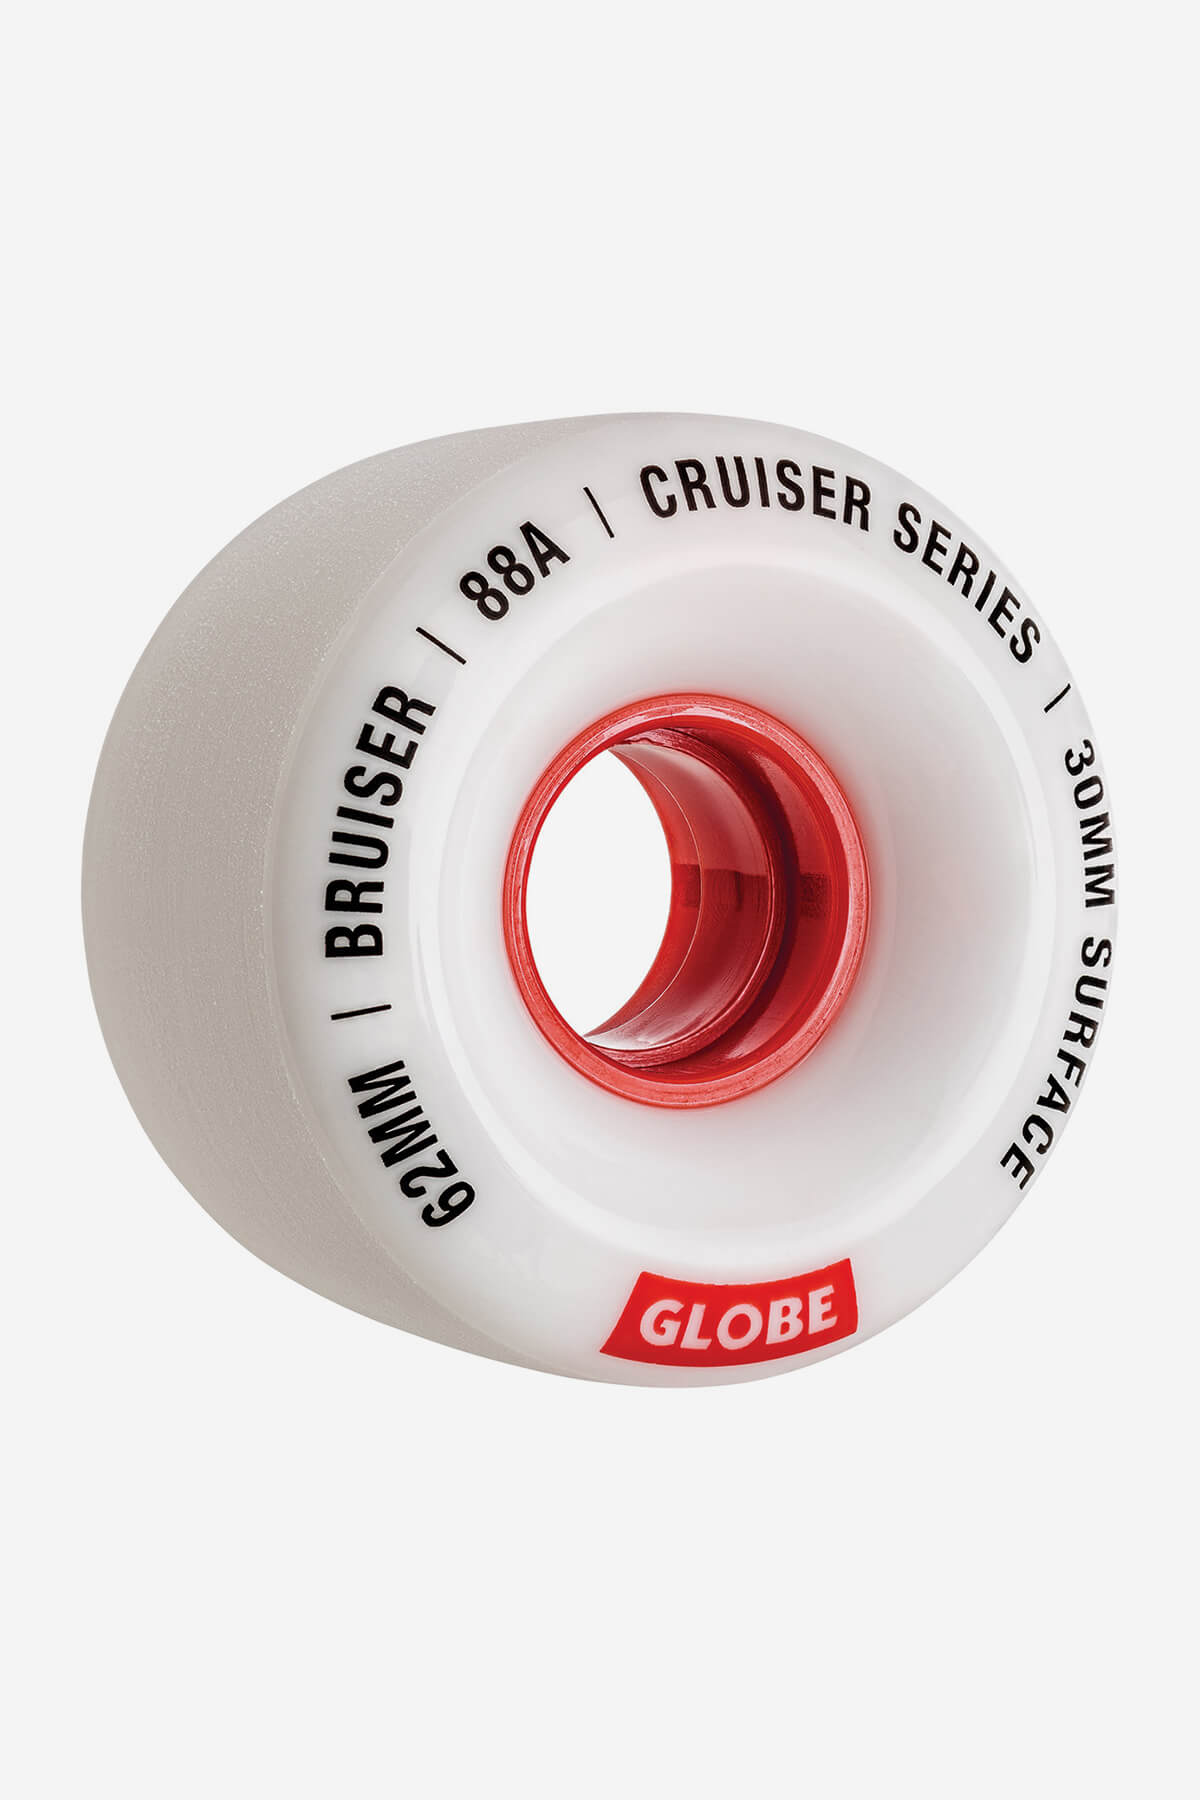 Bruiser Cruiser Skateboard Wheel 62mm - White/Red White/Red/62